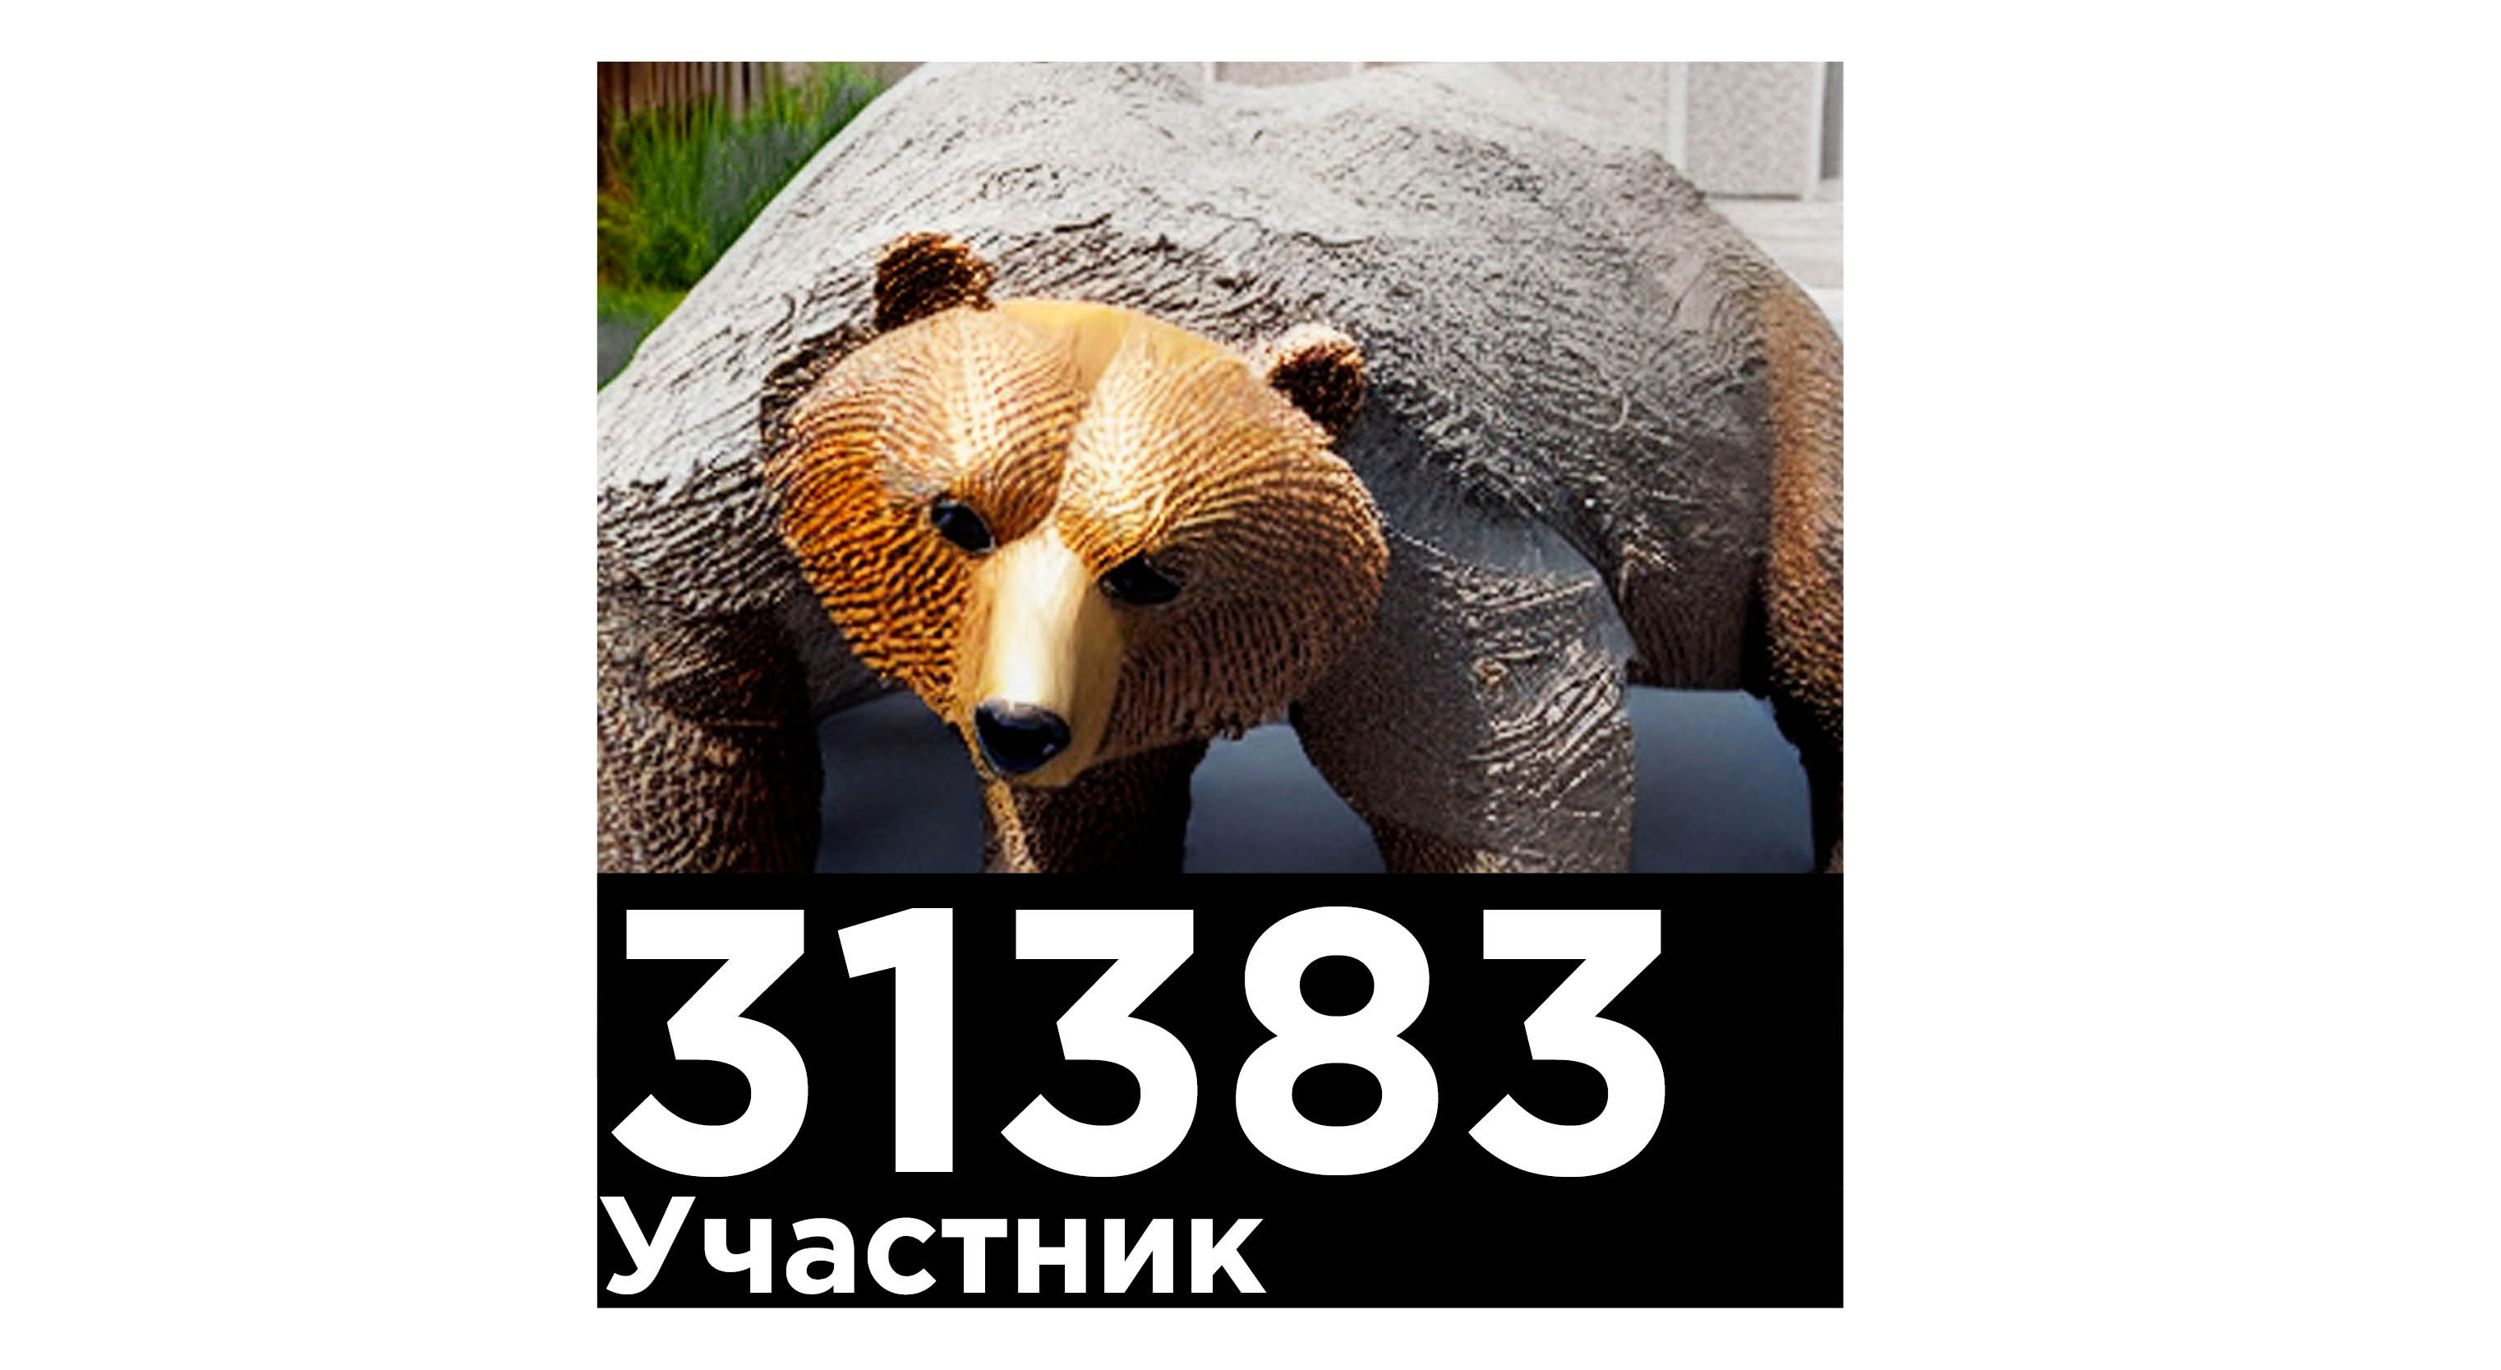 Ярославцев просят выбрать лучший медвежий арт-объект для установки в городе